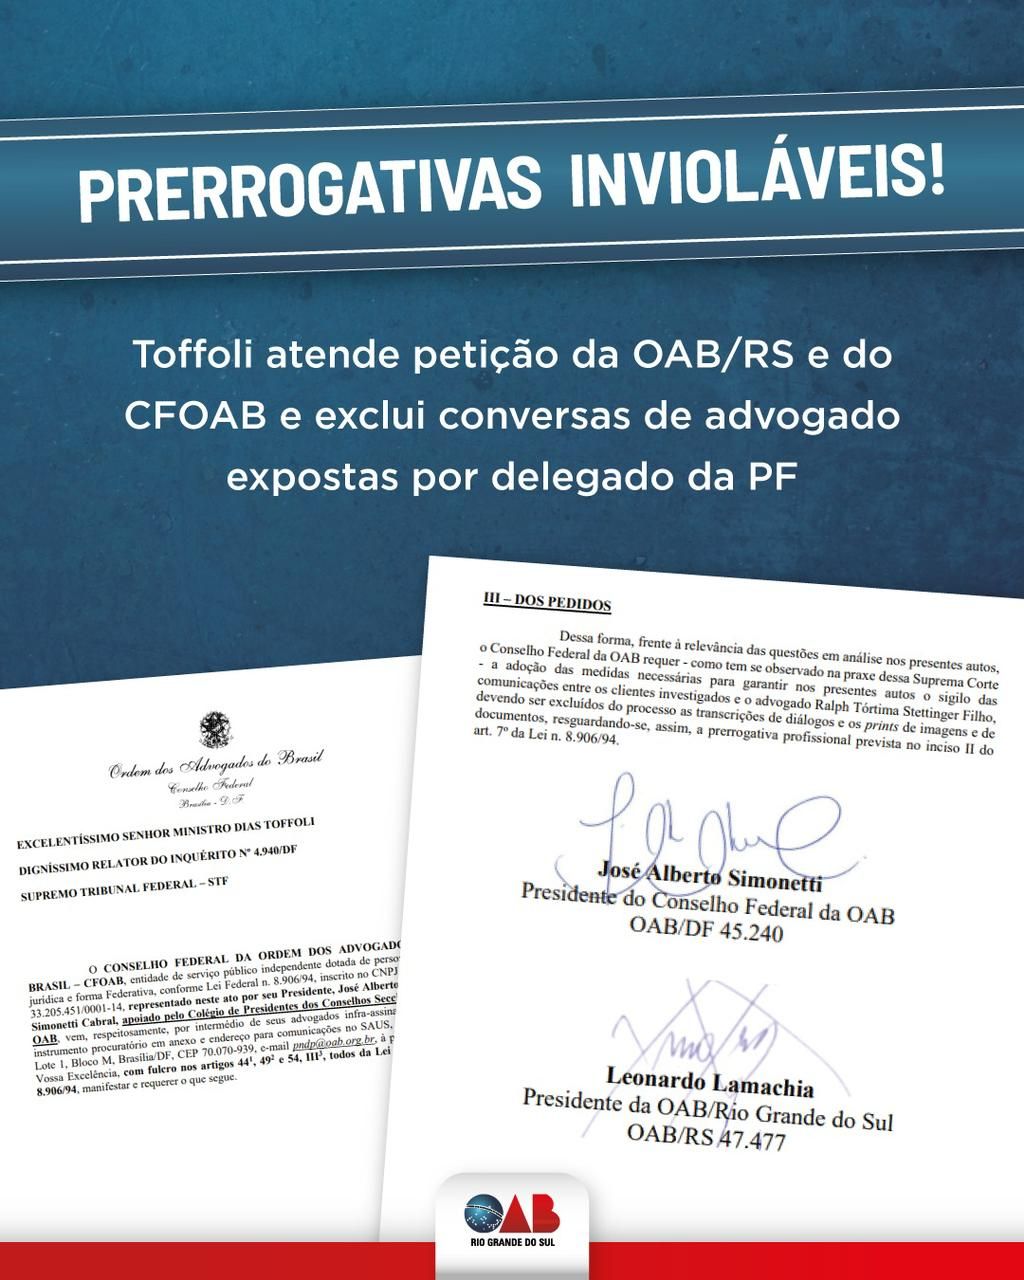 OAB/RS - Prerrogativas: ministro Toffoli atende petição da OAB/RS e do  CFOAB e exclui conversas de advogado expostas por delegado da PF